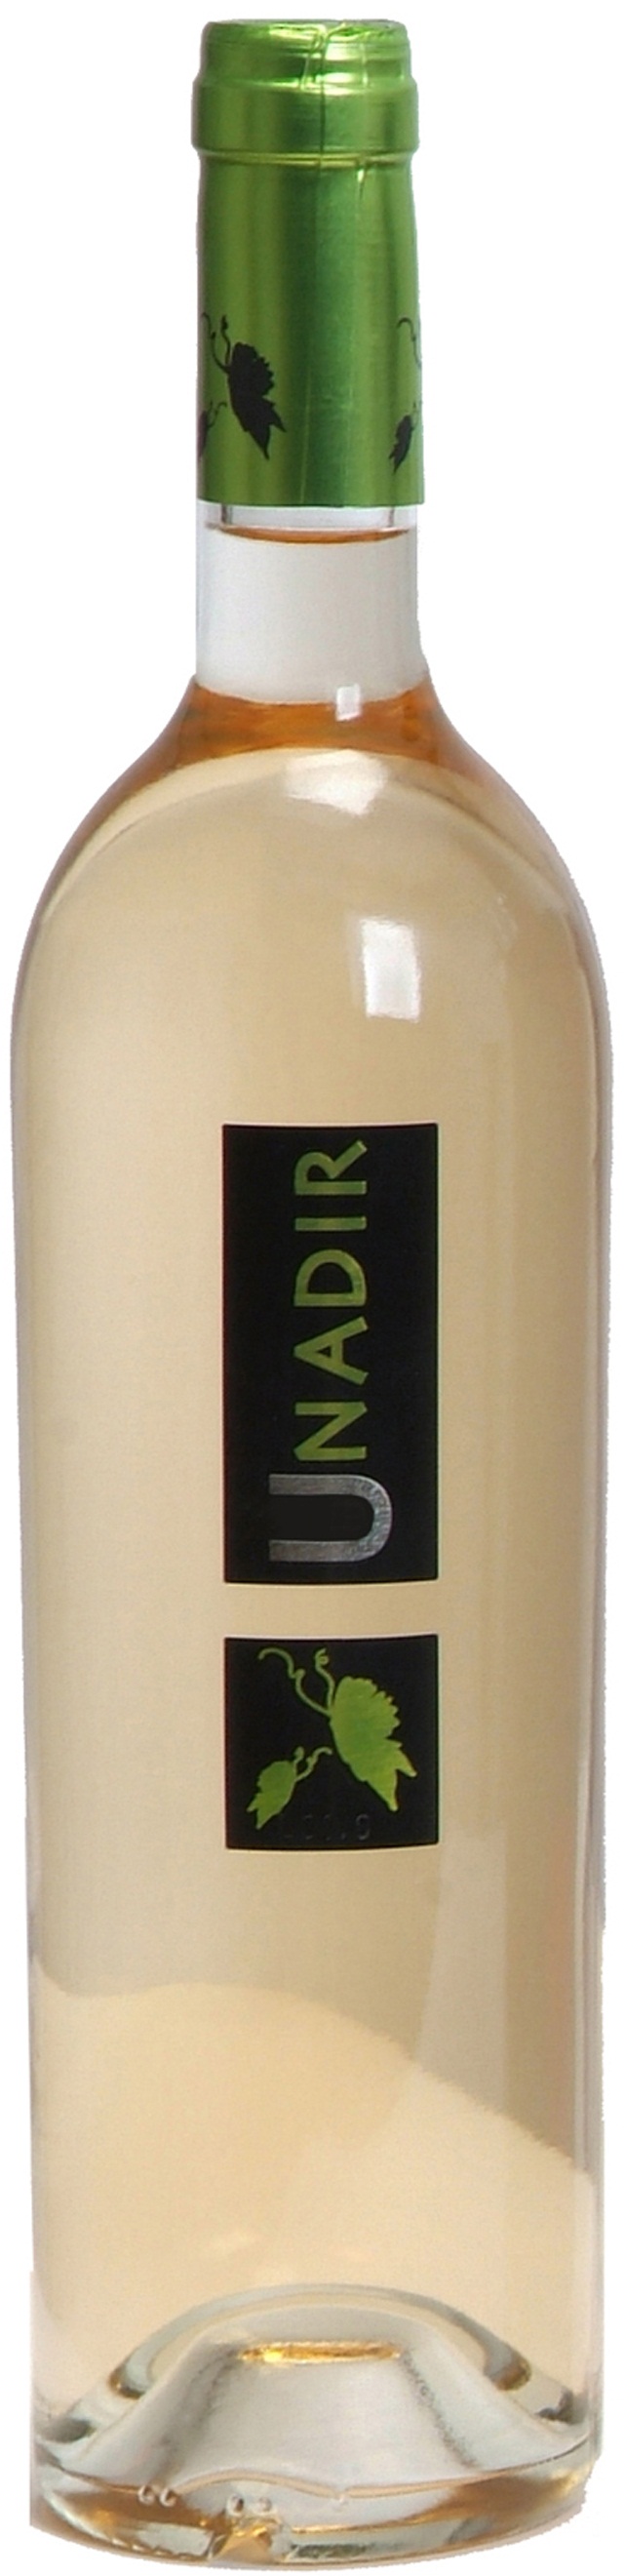 Logo del vino Unadir Blanco